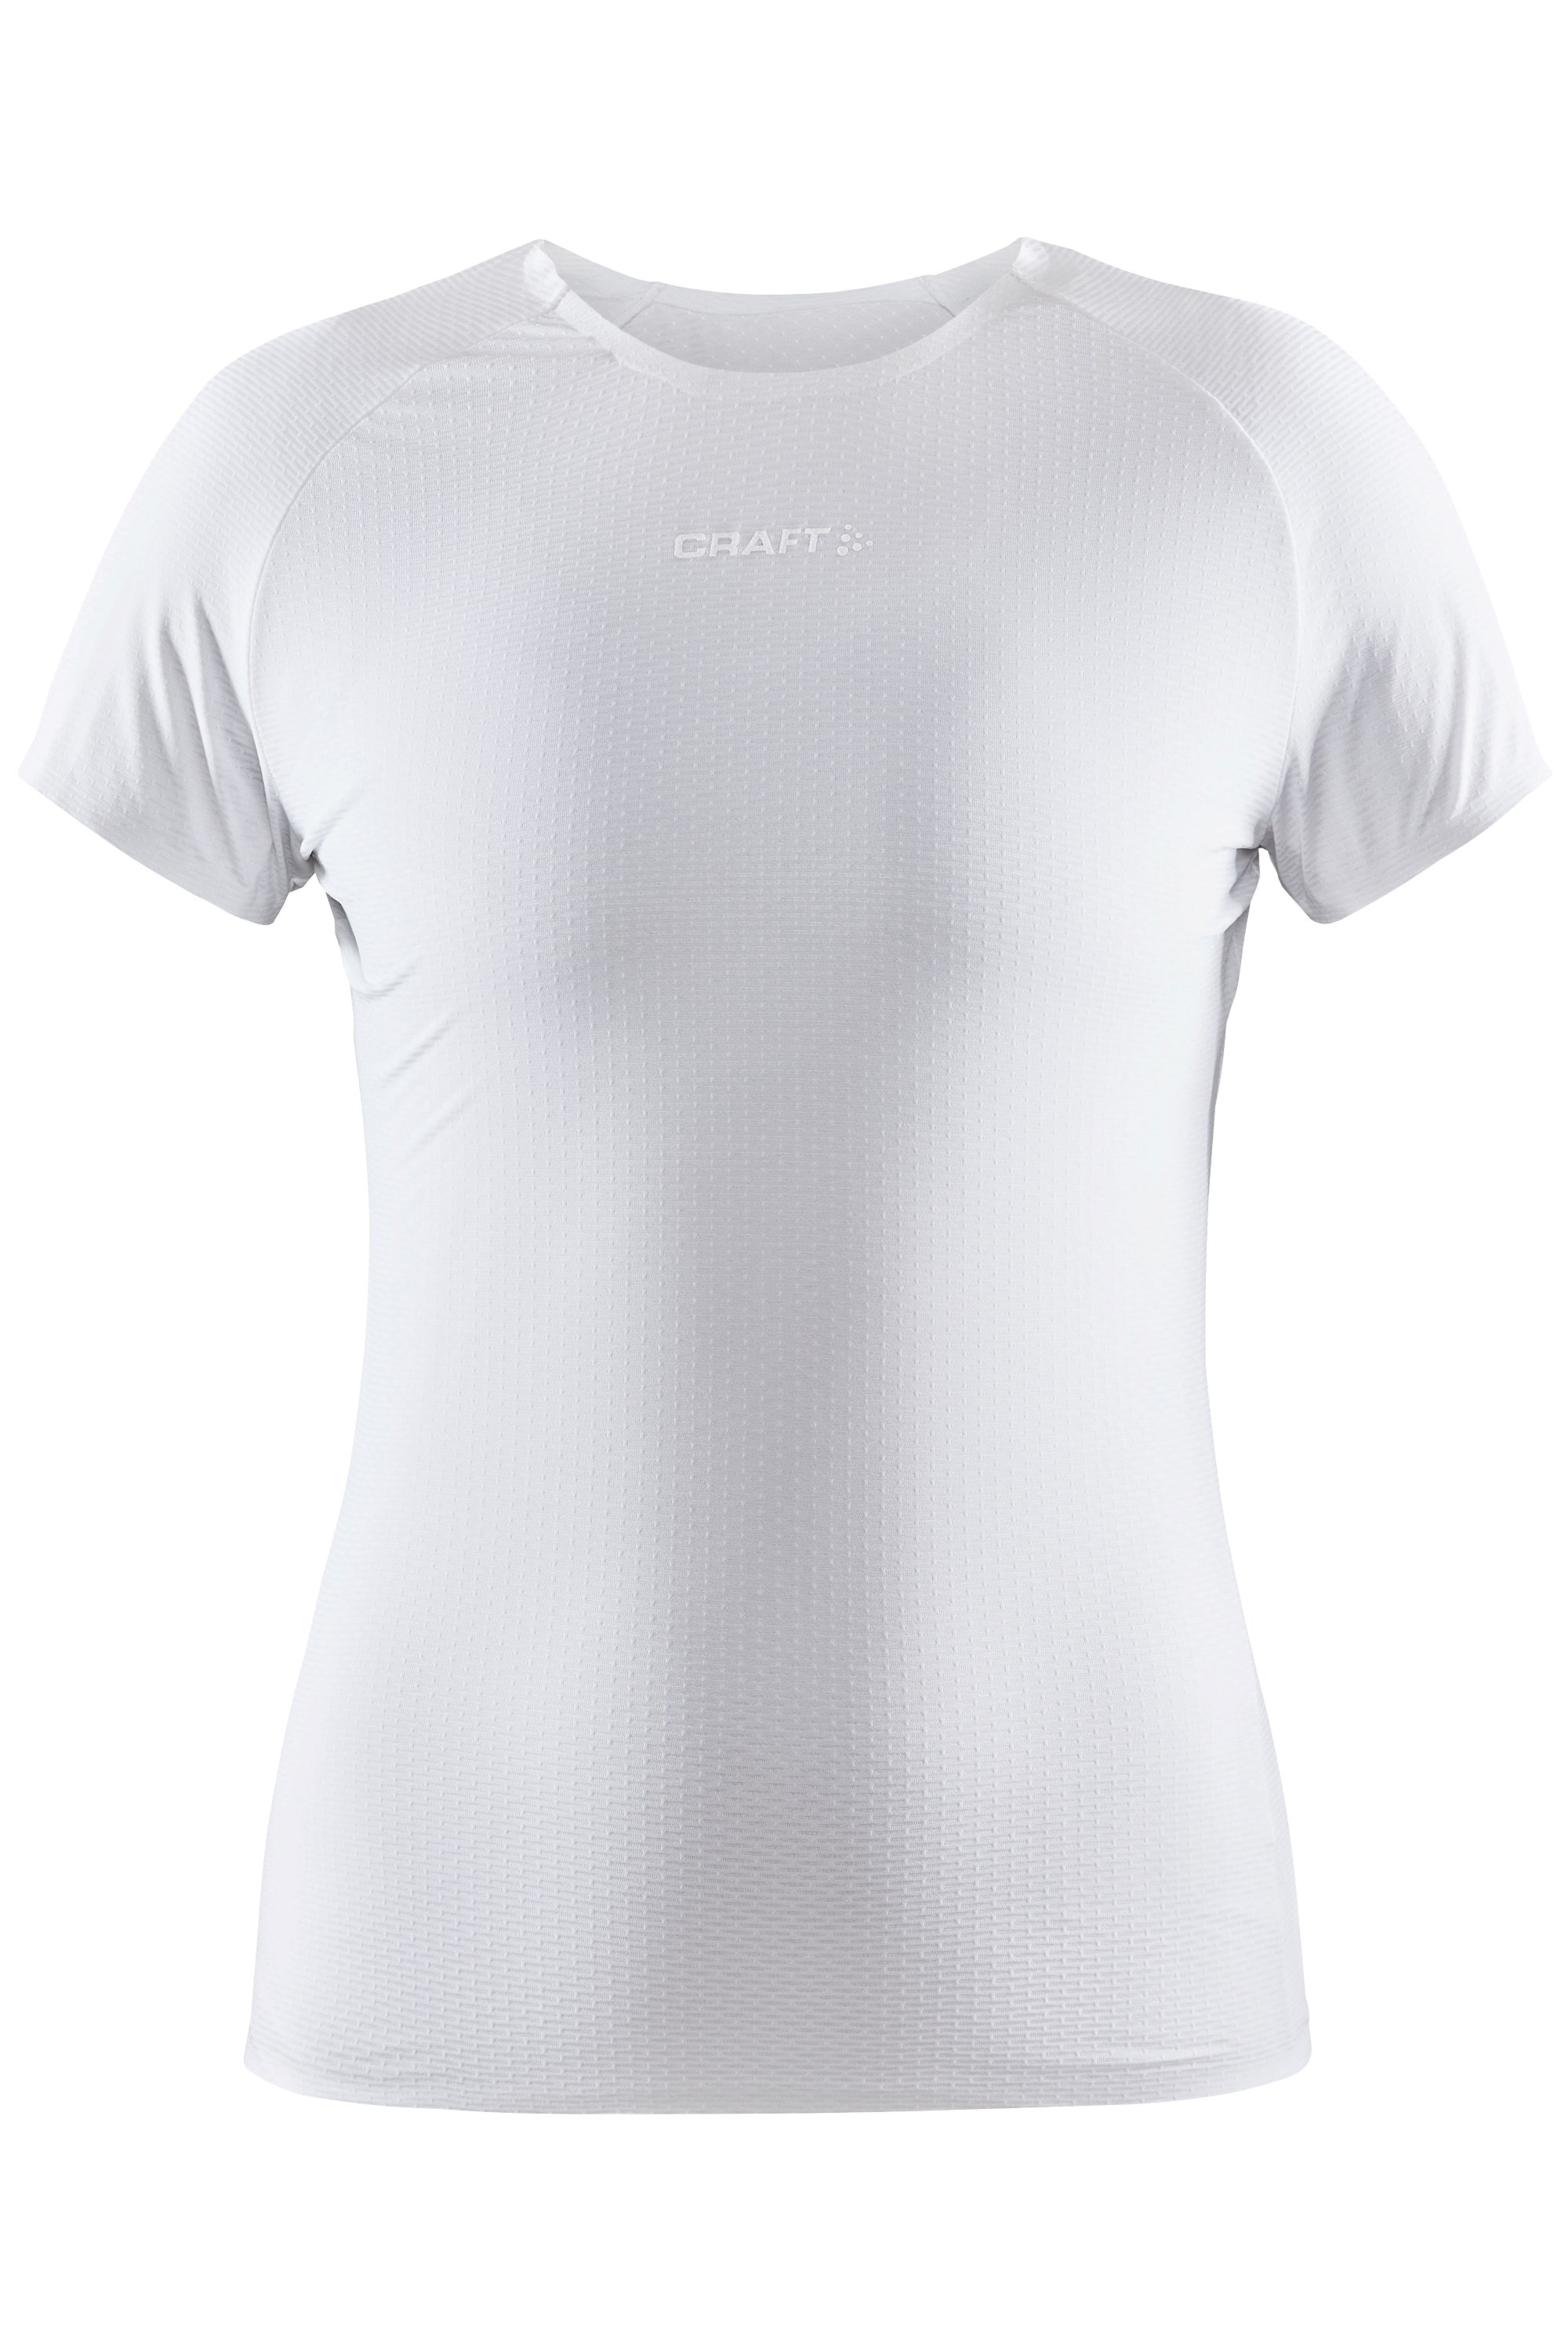 Pro Dry Womens Nanoweight Mesh Baselayer T-Shirt